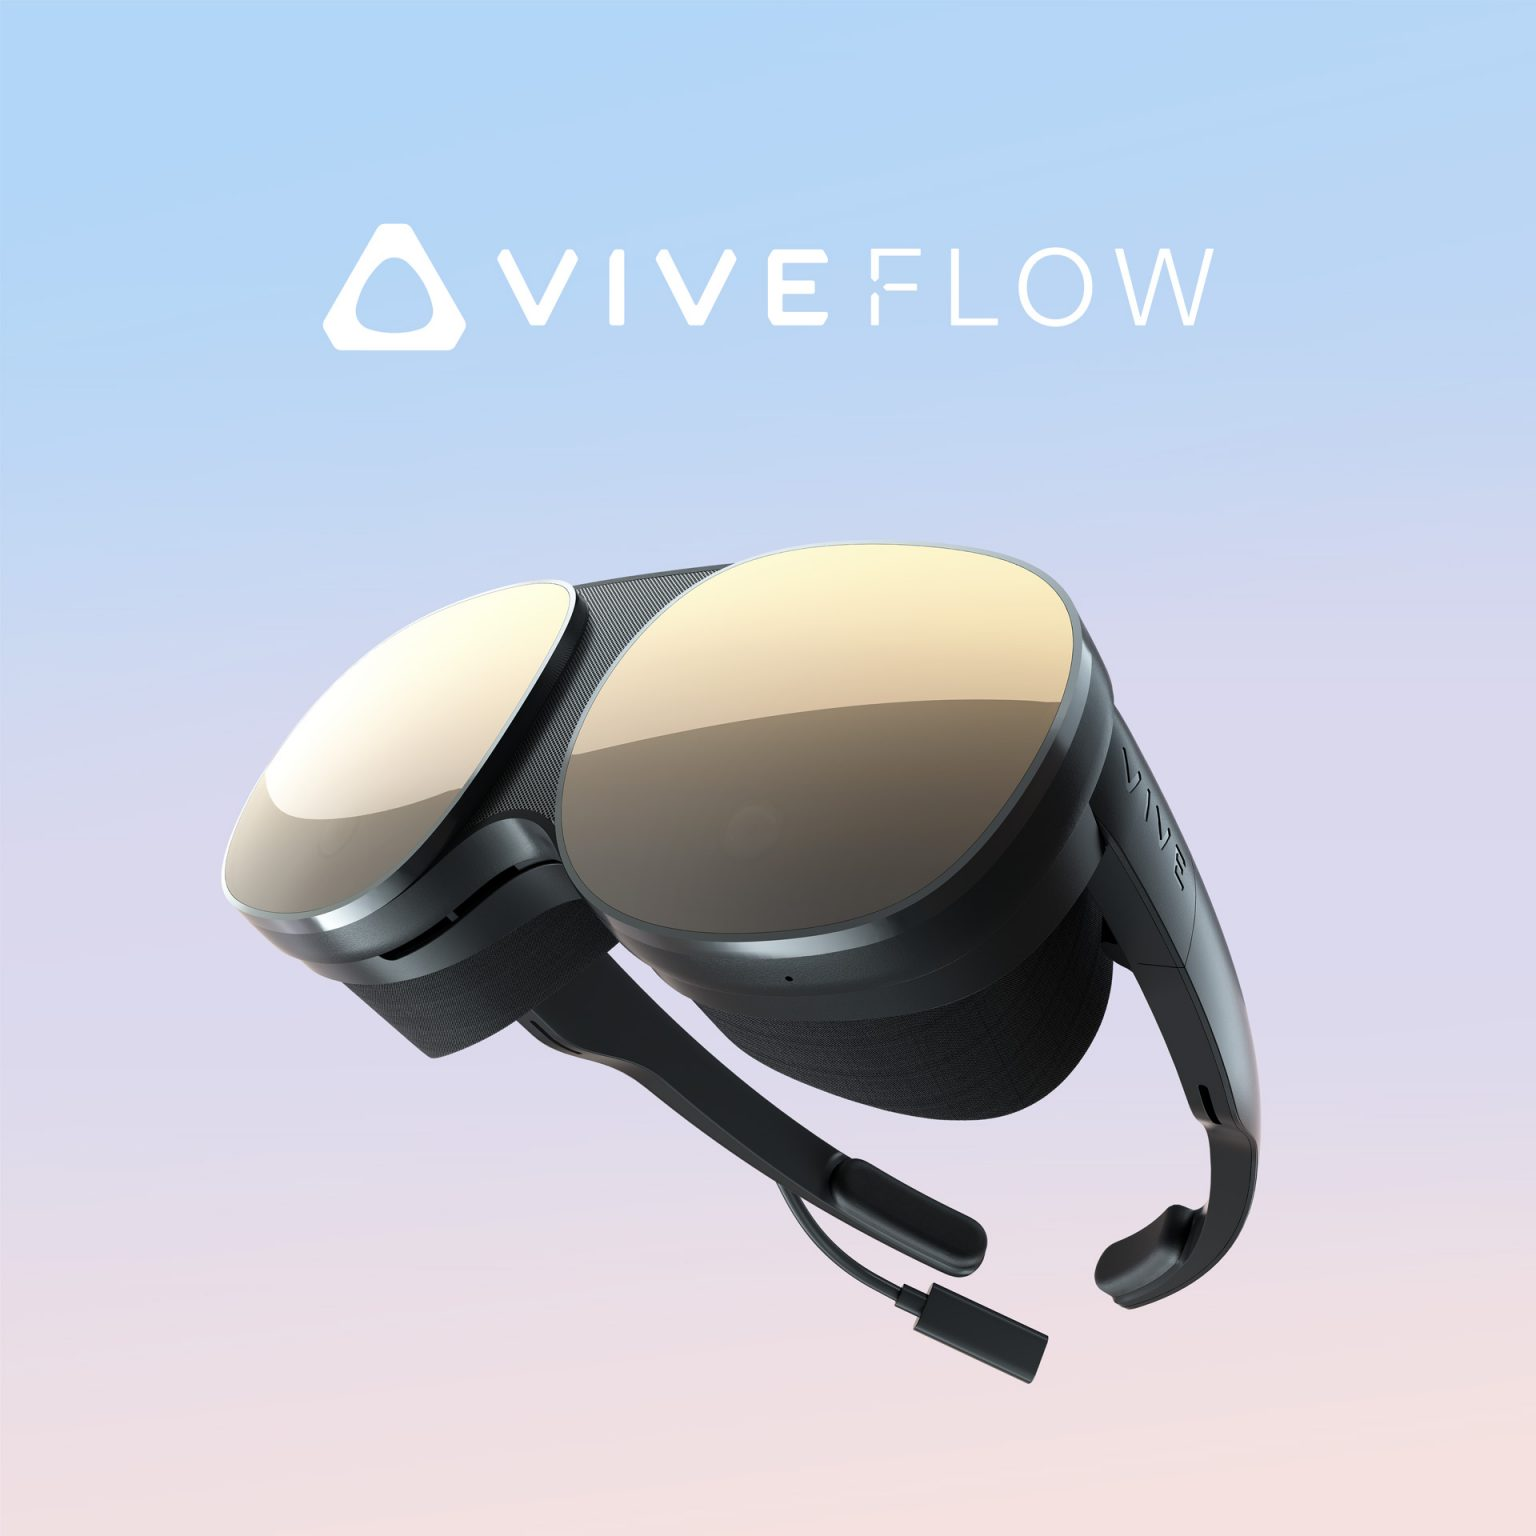 Casque VR : HTC Vive Flow